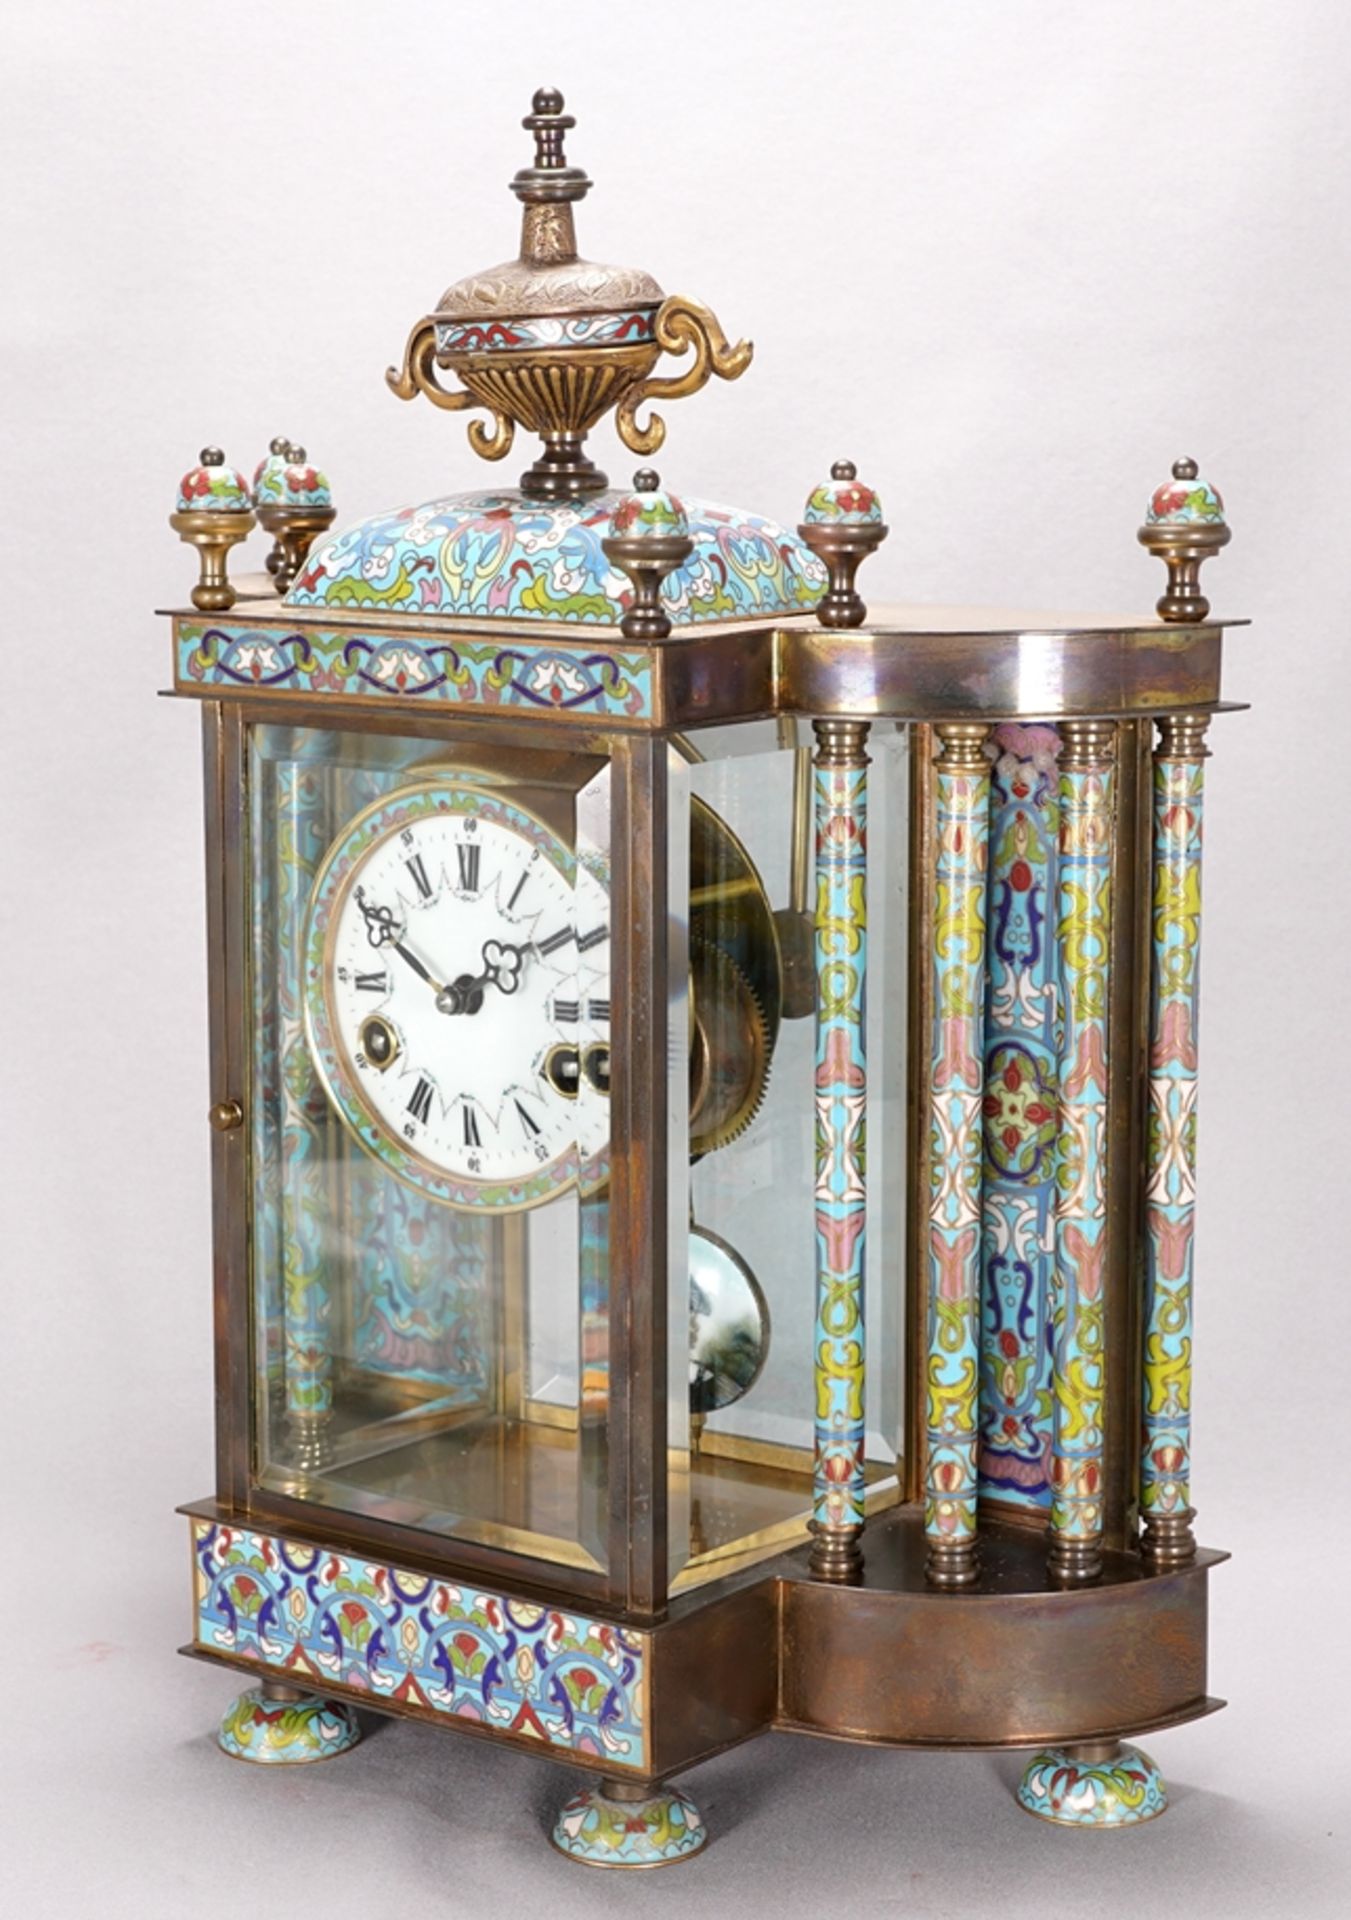 Cloisonné mantel clock - Image 3 of 6